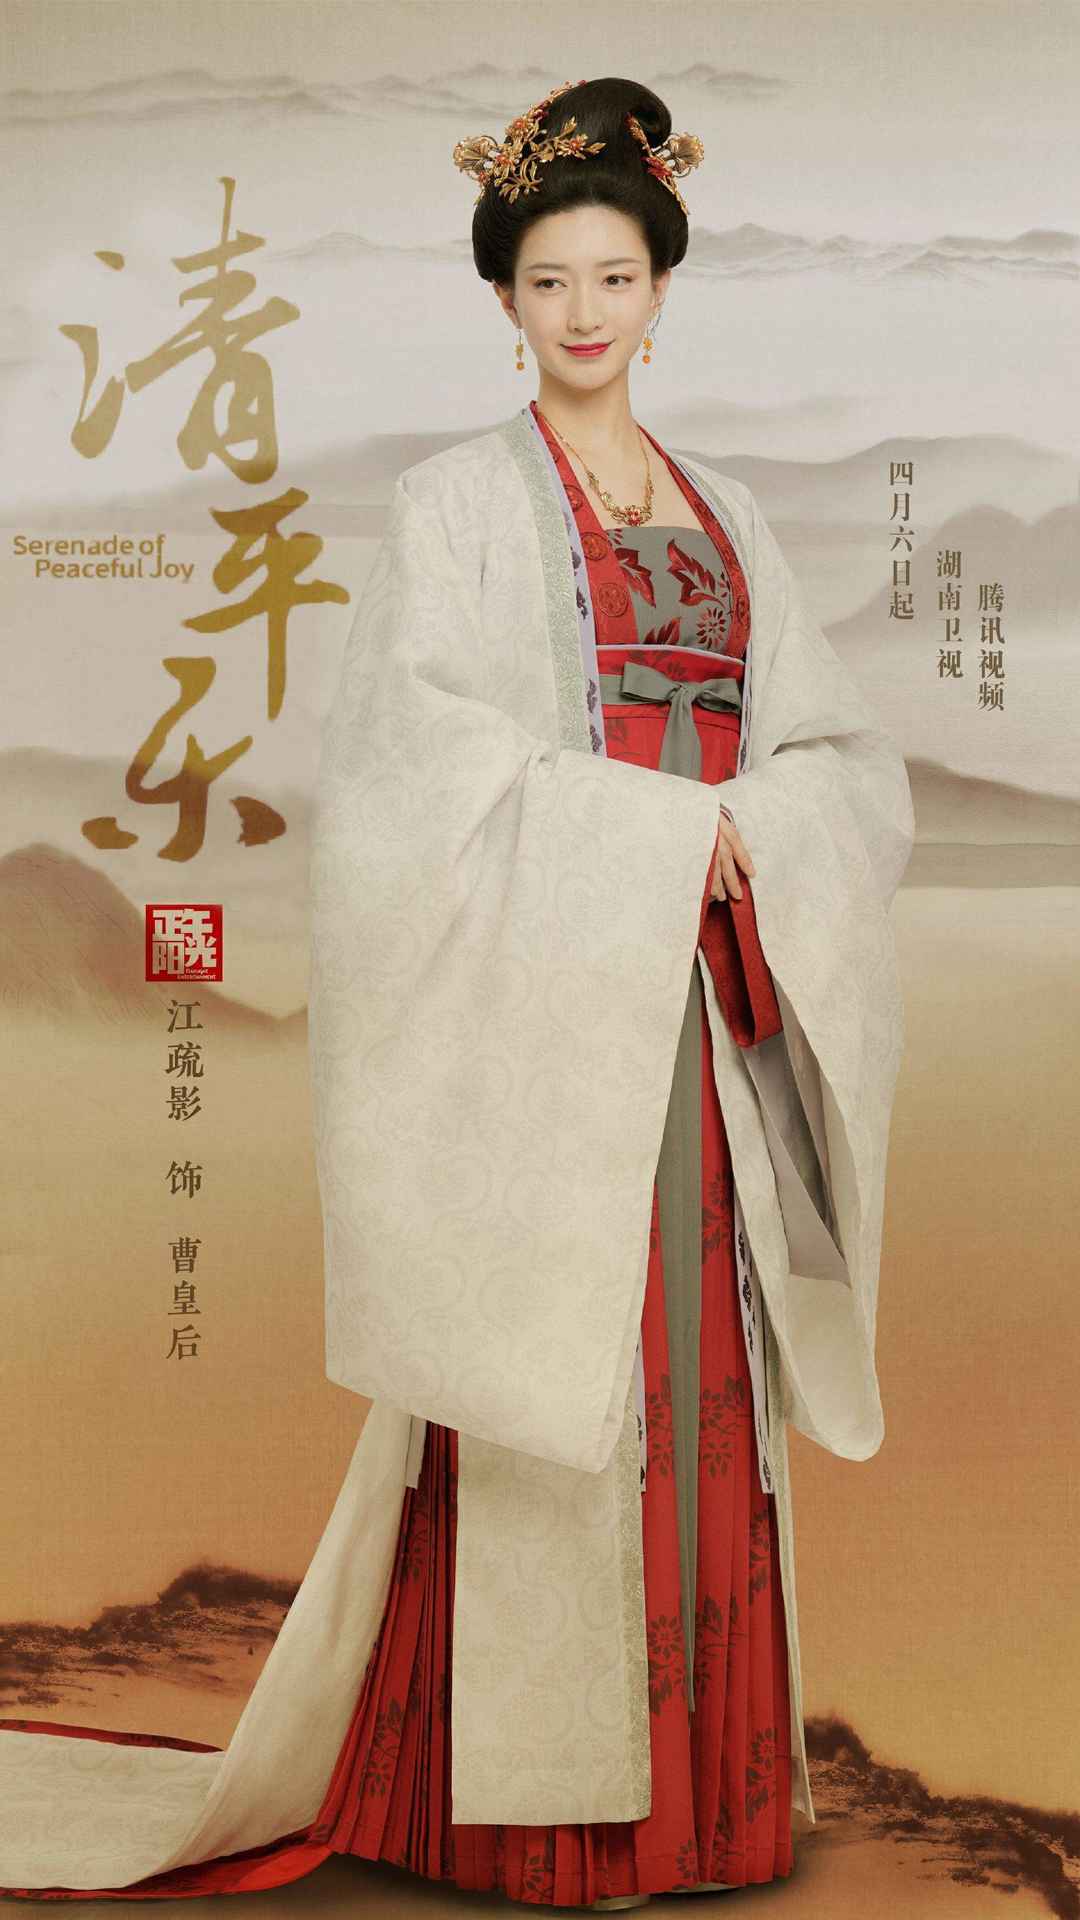 古装电视剧《清平乐》主角“王凯，江疏影”海报手机壁纸图片套图1